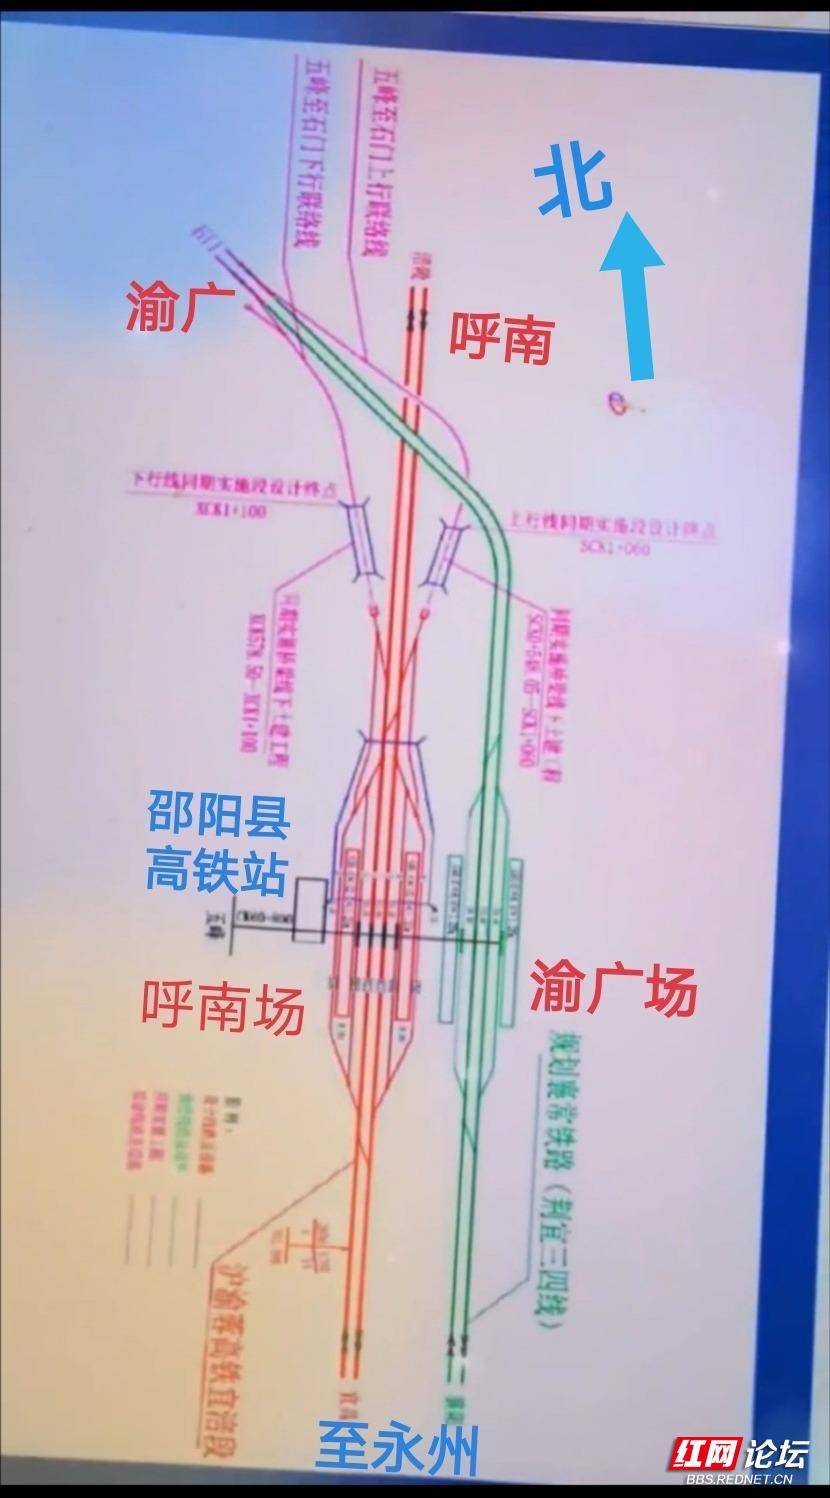 就呼南高铁而言邵阳站邵阳县站之间能见到300kmh以上的行驶速度吗